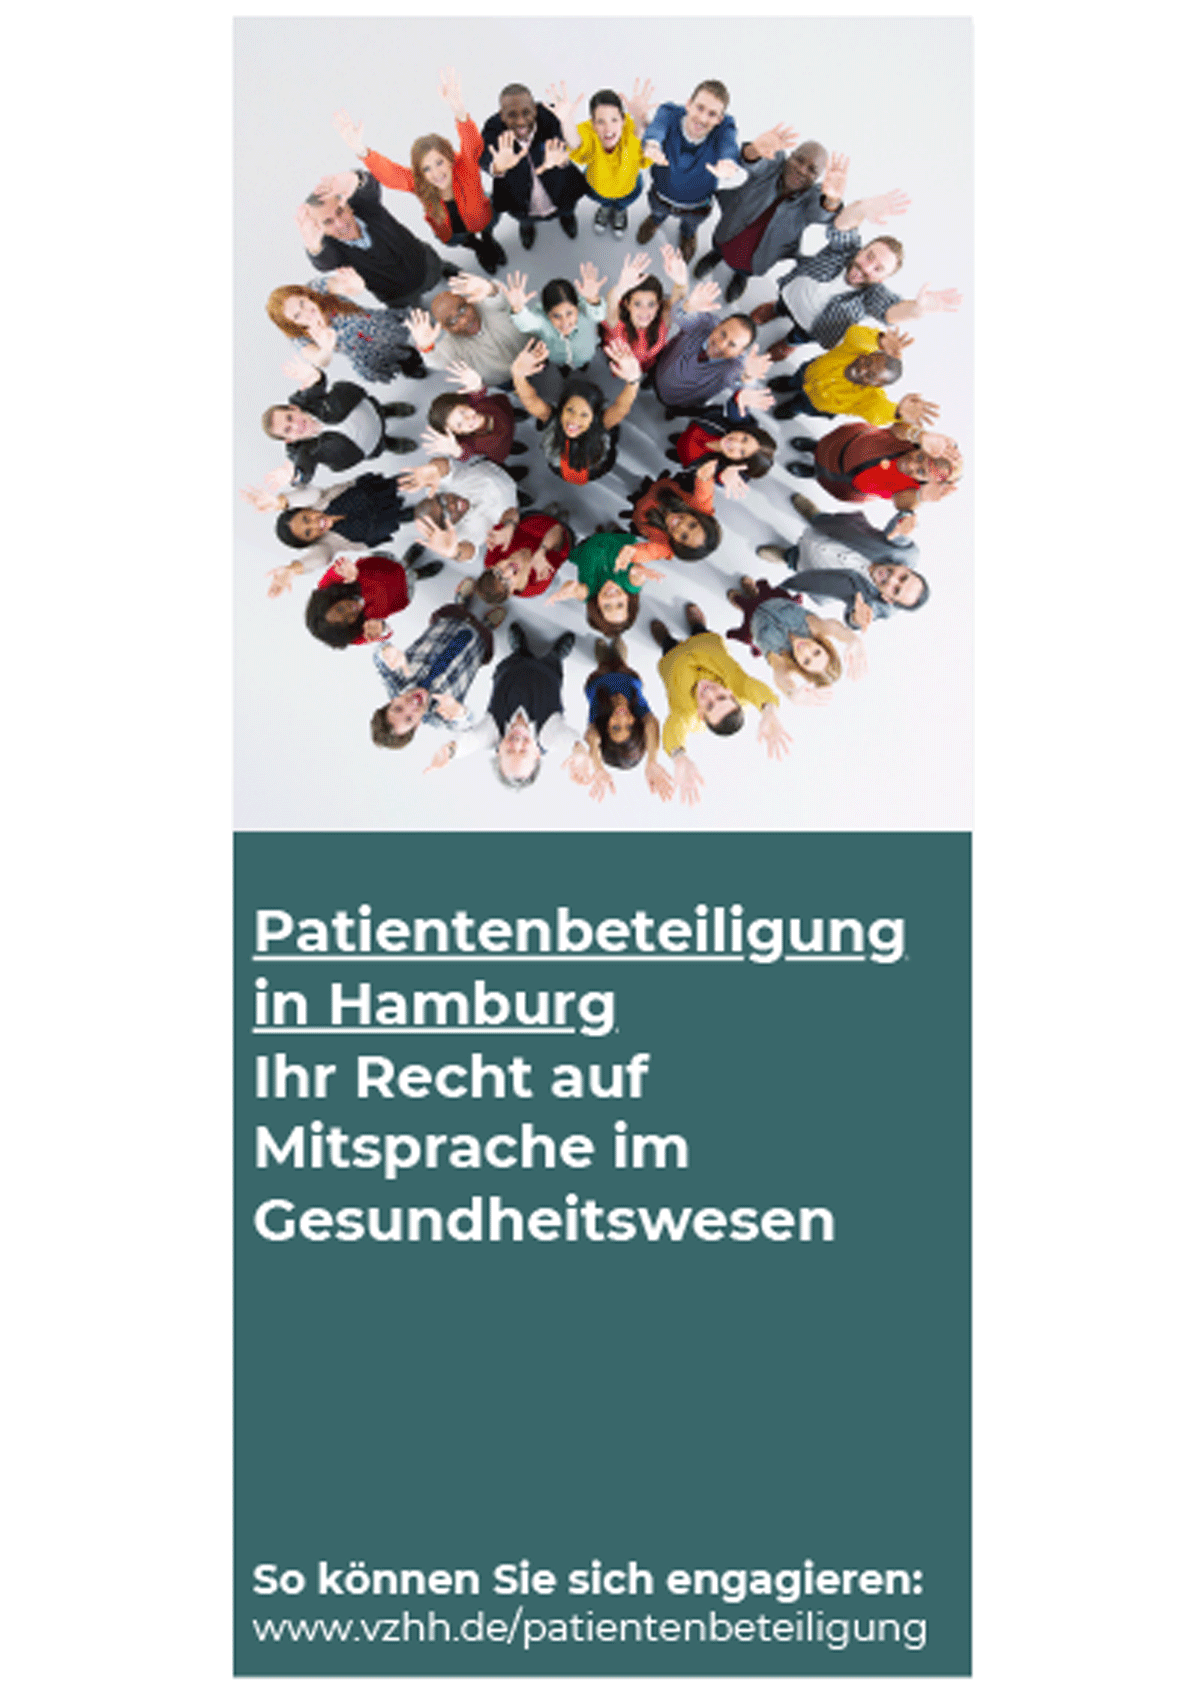 Infoflyer der Stabsstelle Patientenbeteiligung in Hamburg